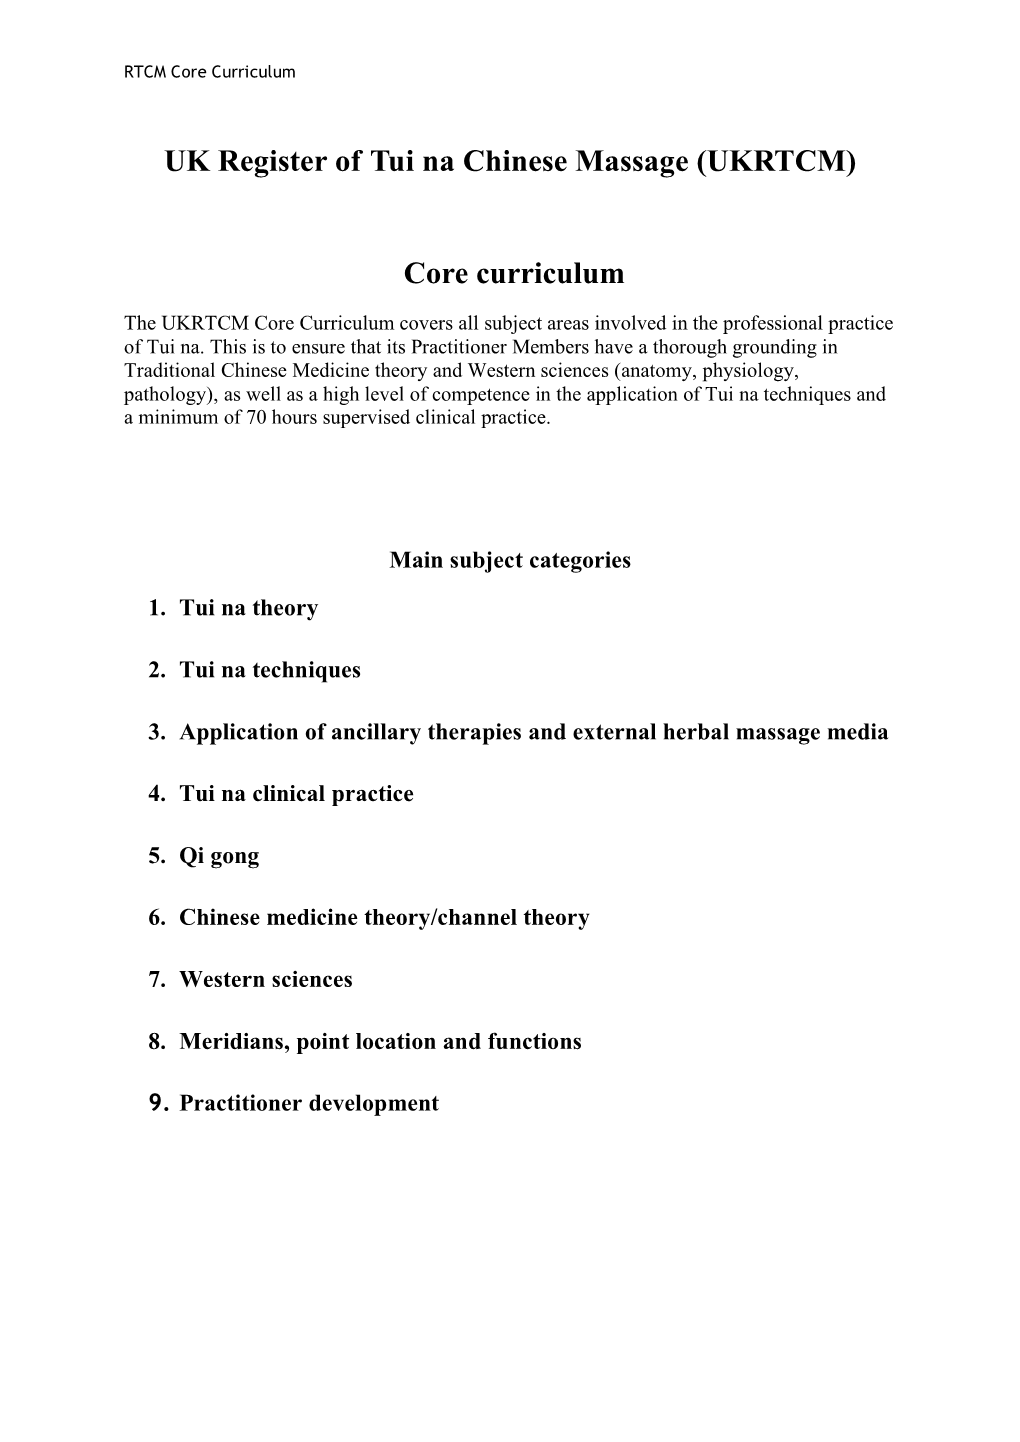 UK Register of Tui Na Chinese Massage (UKRTCM) Core Curriculum